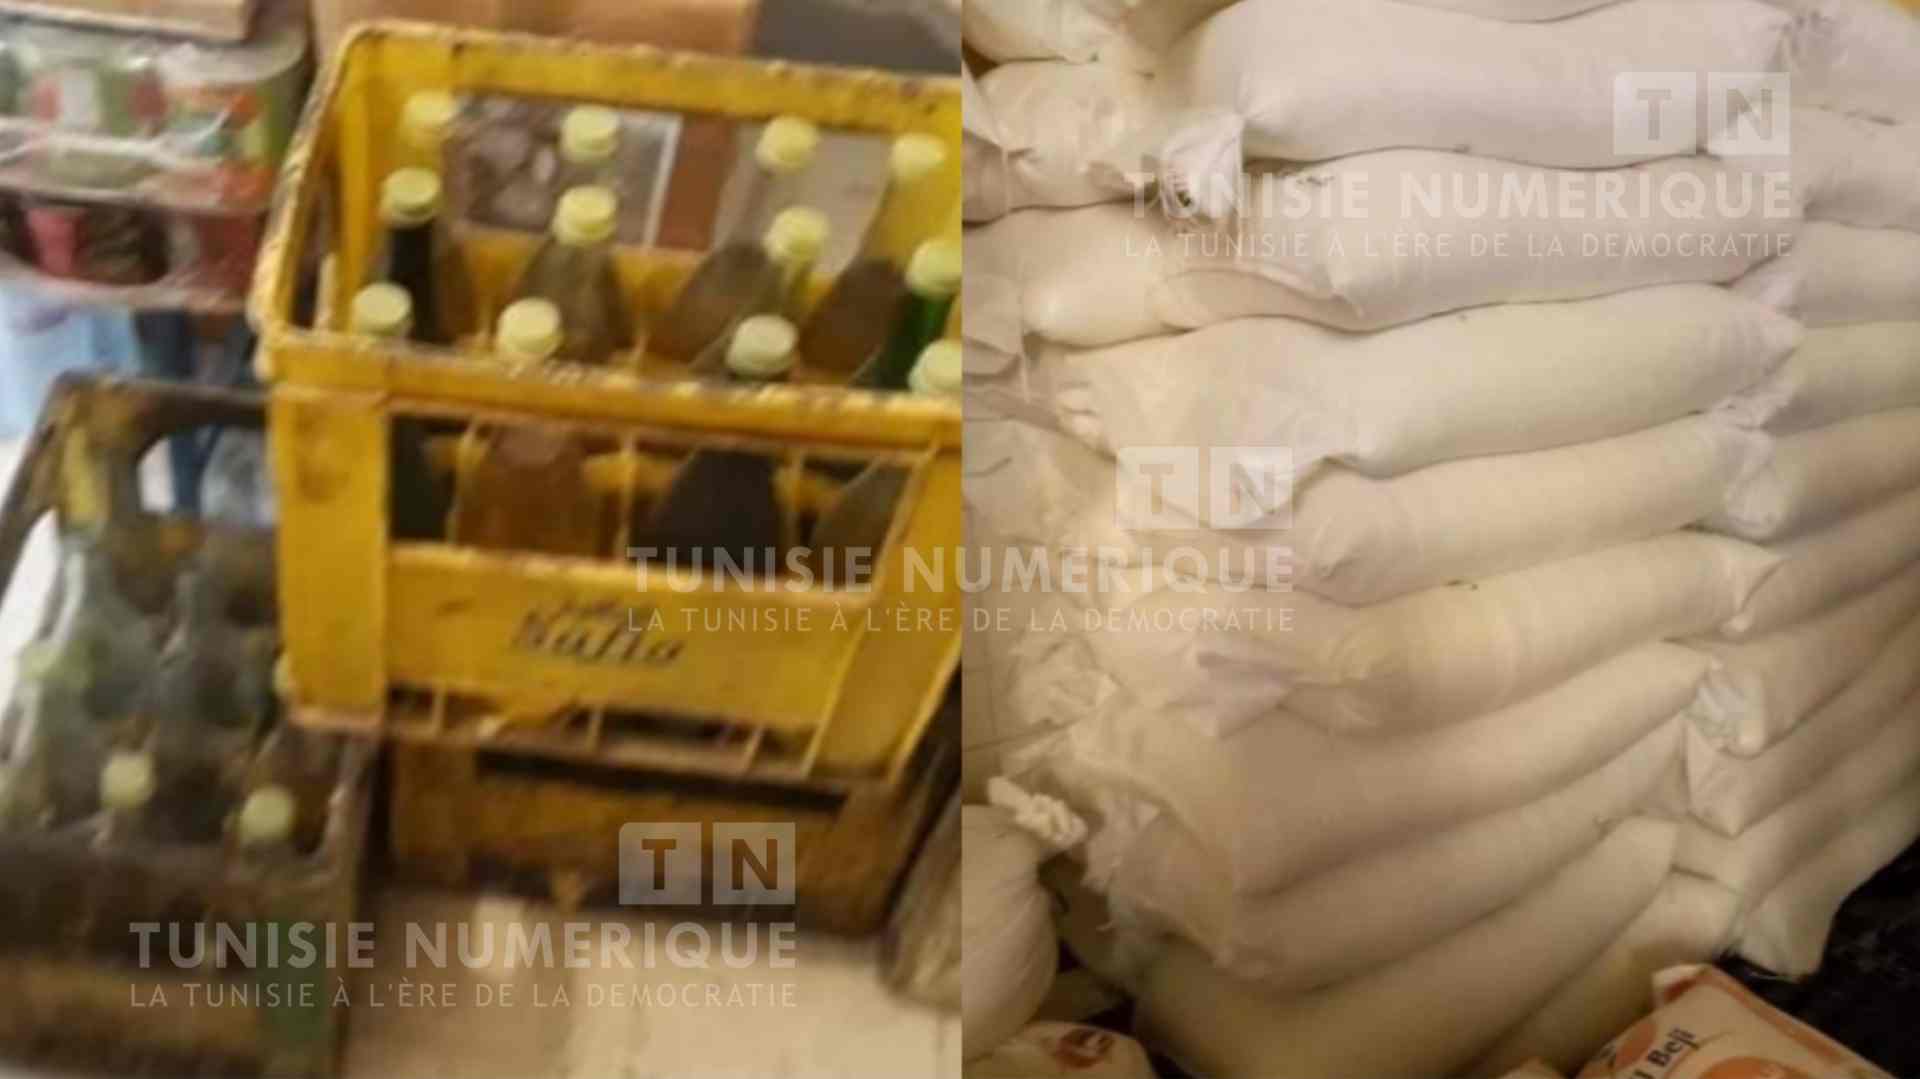 Jendouba: Saisie de 100 kg de sucre subventionné et de 42 litres d’huile végétale